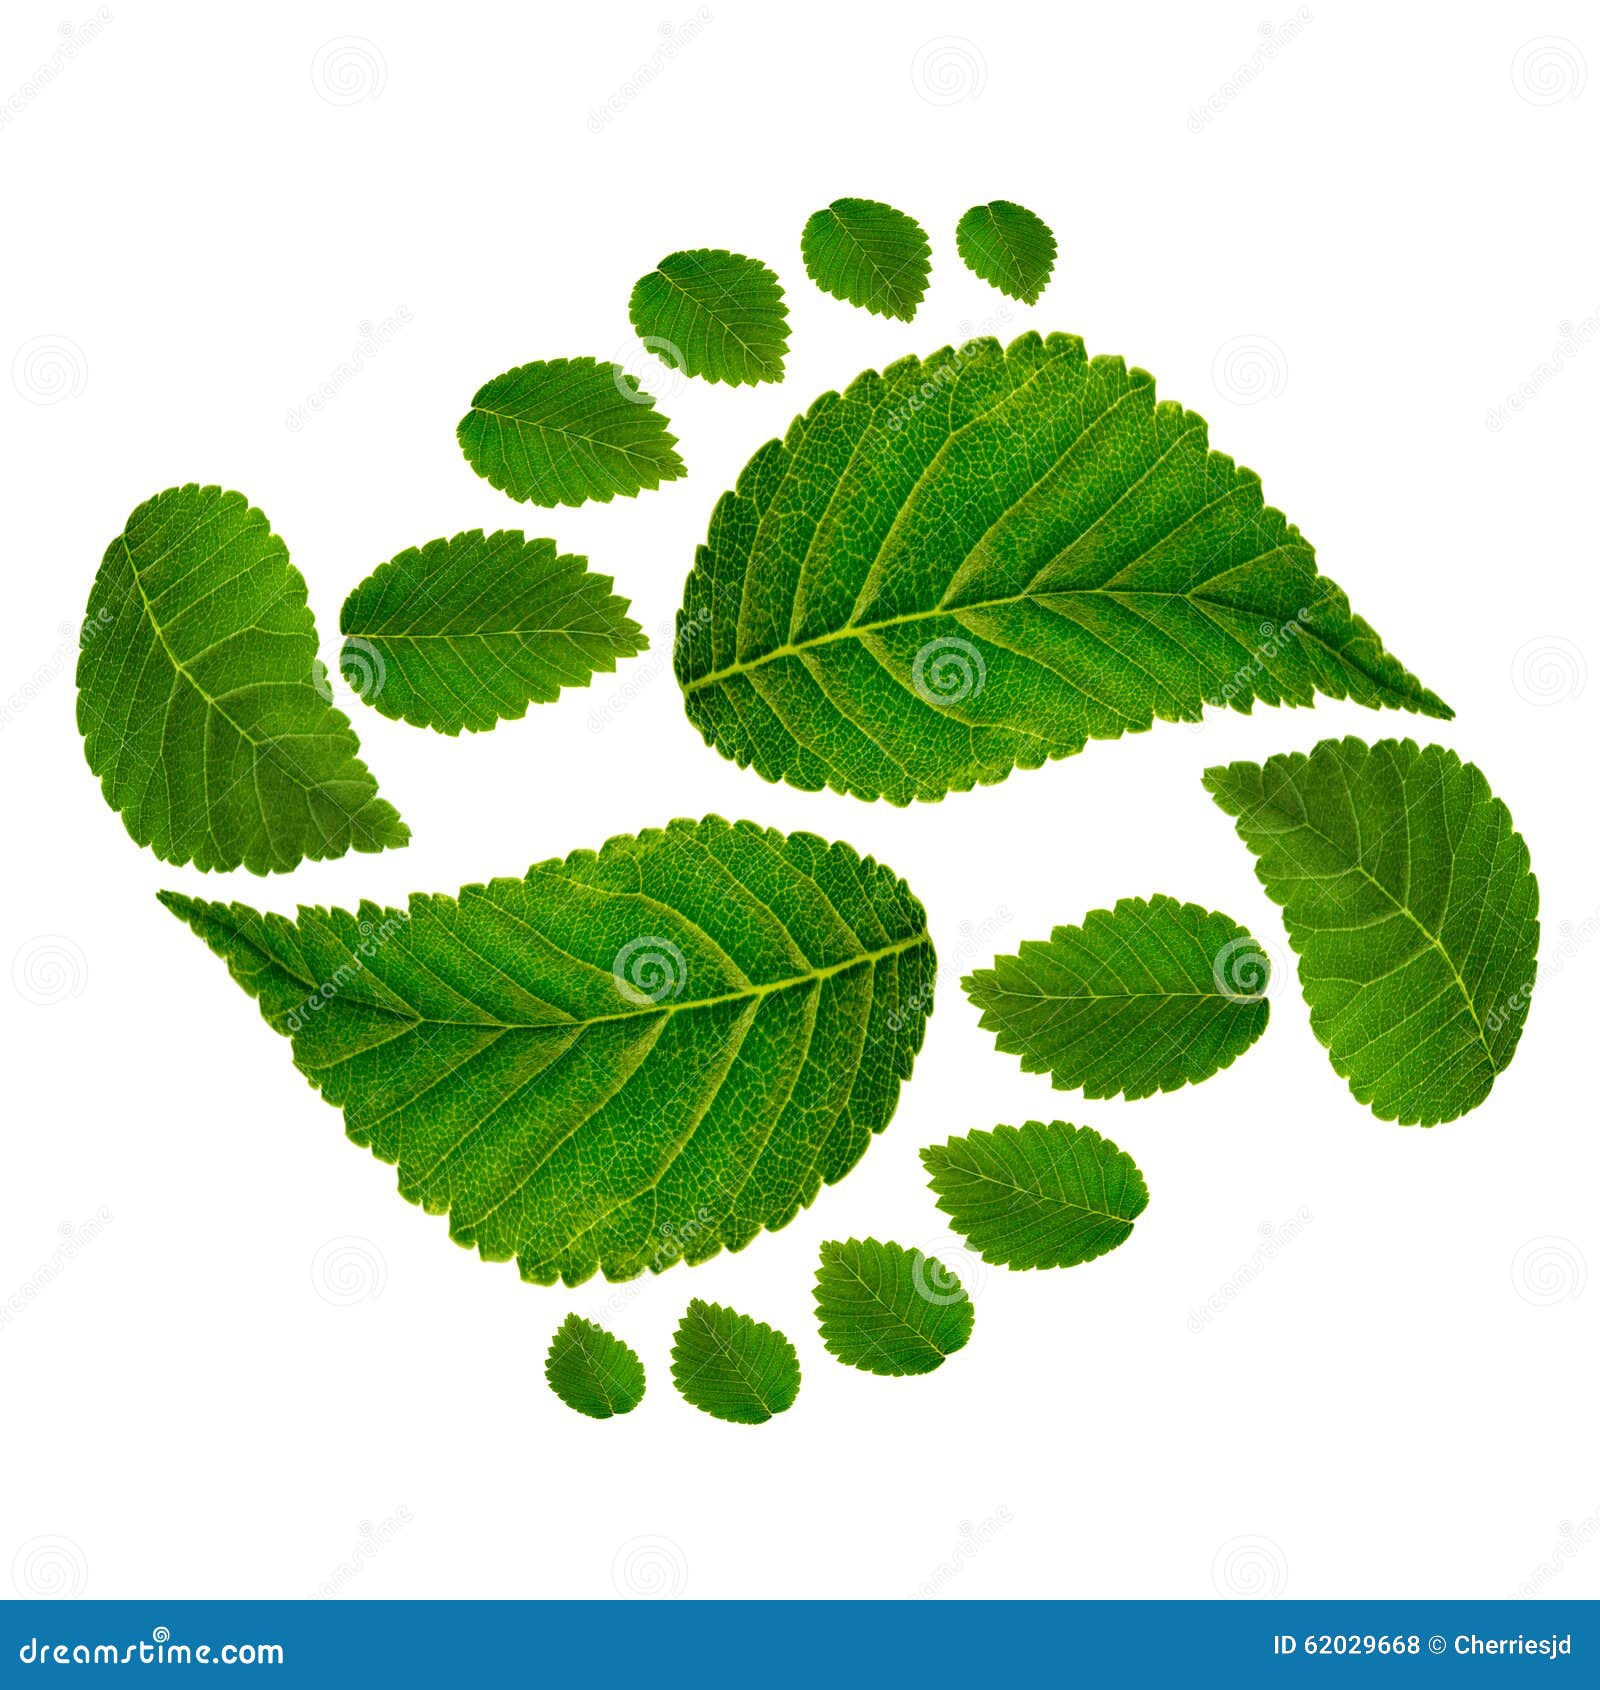 footprint ying jang sign